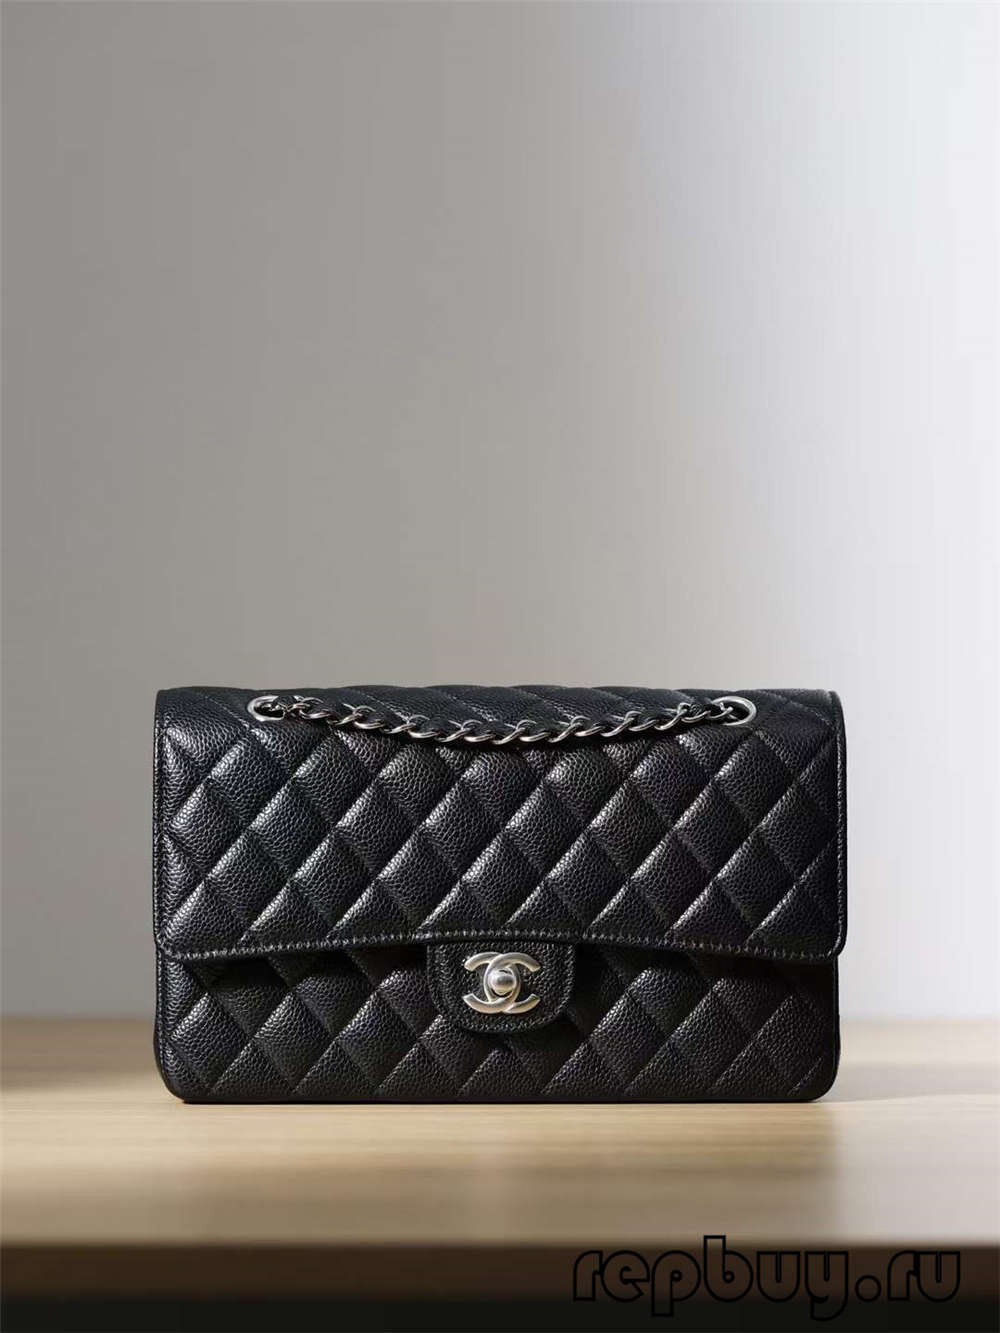 กระเป๋า Chanel ปลอม หนังแท้ ดีที่สุด!! Chanel Classic Flap Replica - ร้านค้าออนไลน์กระเป๋า Louis Vuitton ปลอมคุณภาพดีที่สุด, กระเป๋านักออกแบบแบบจำลอง ru